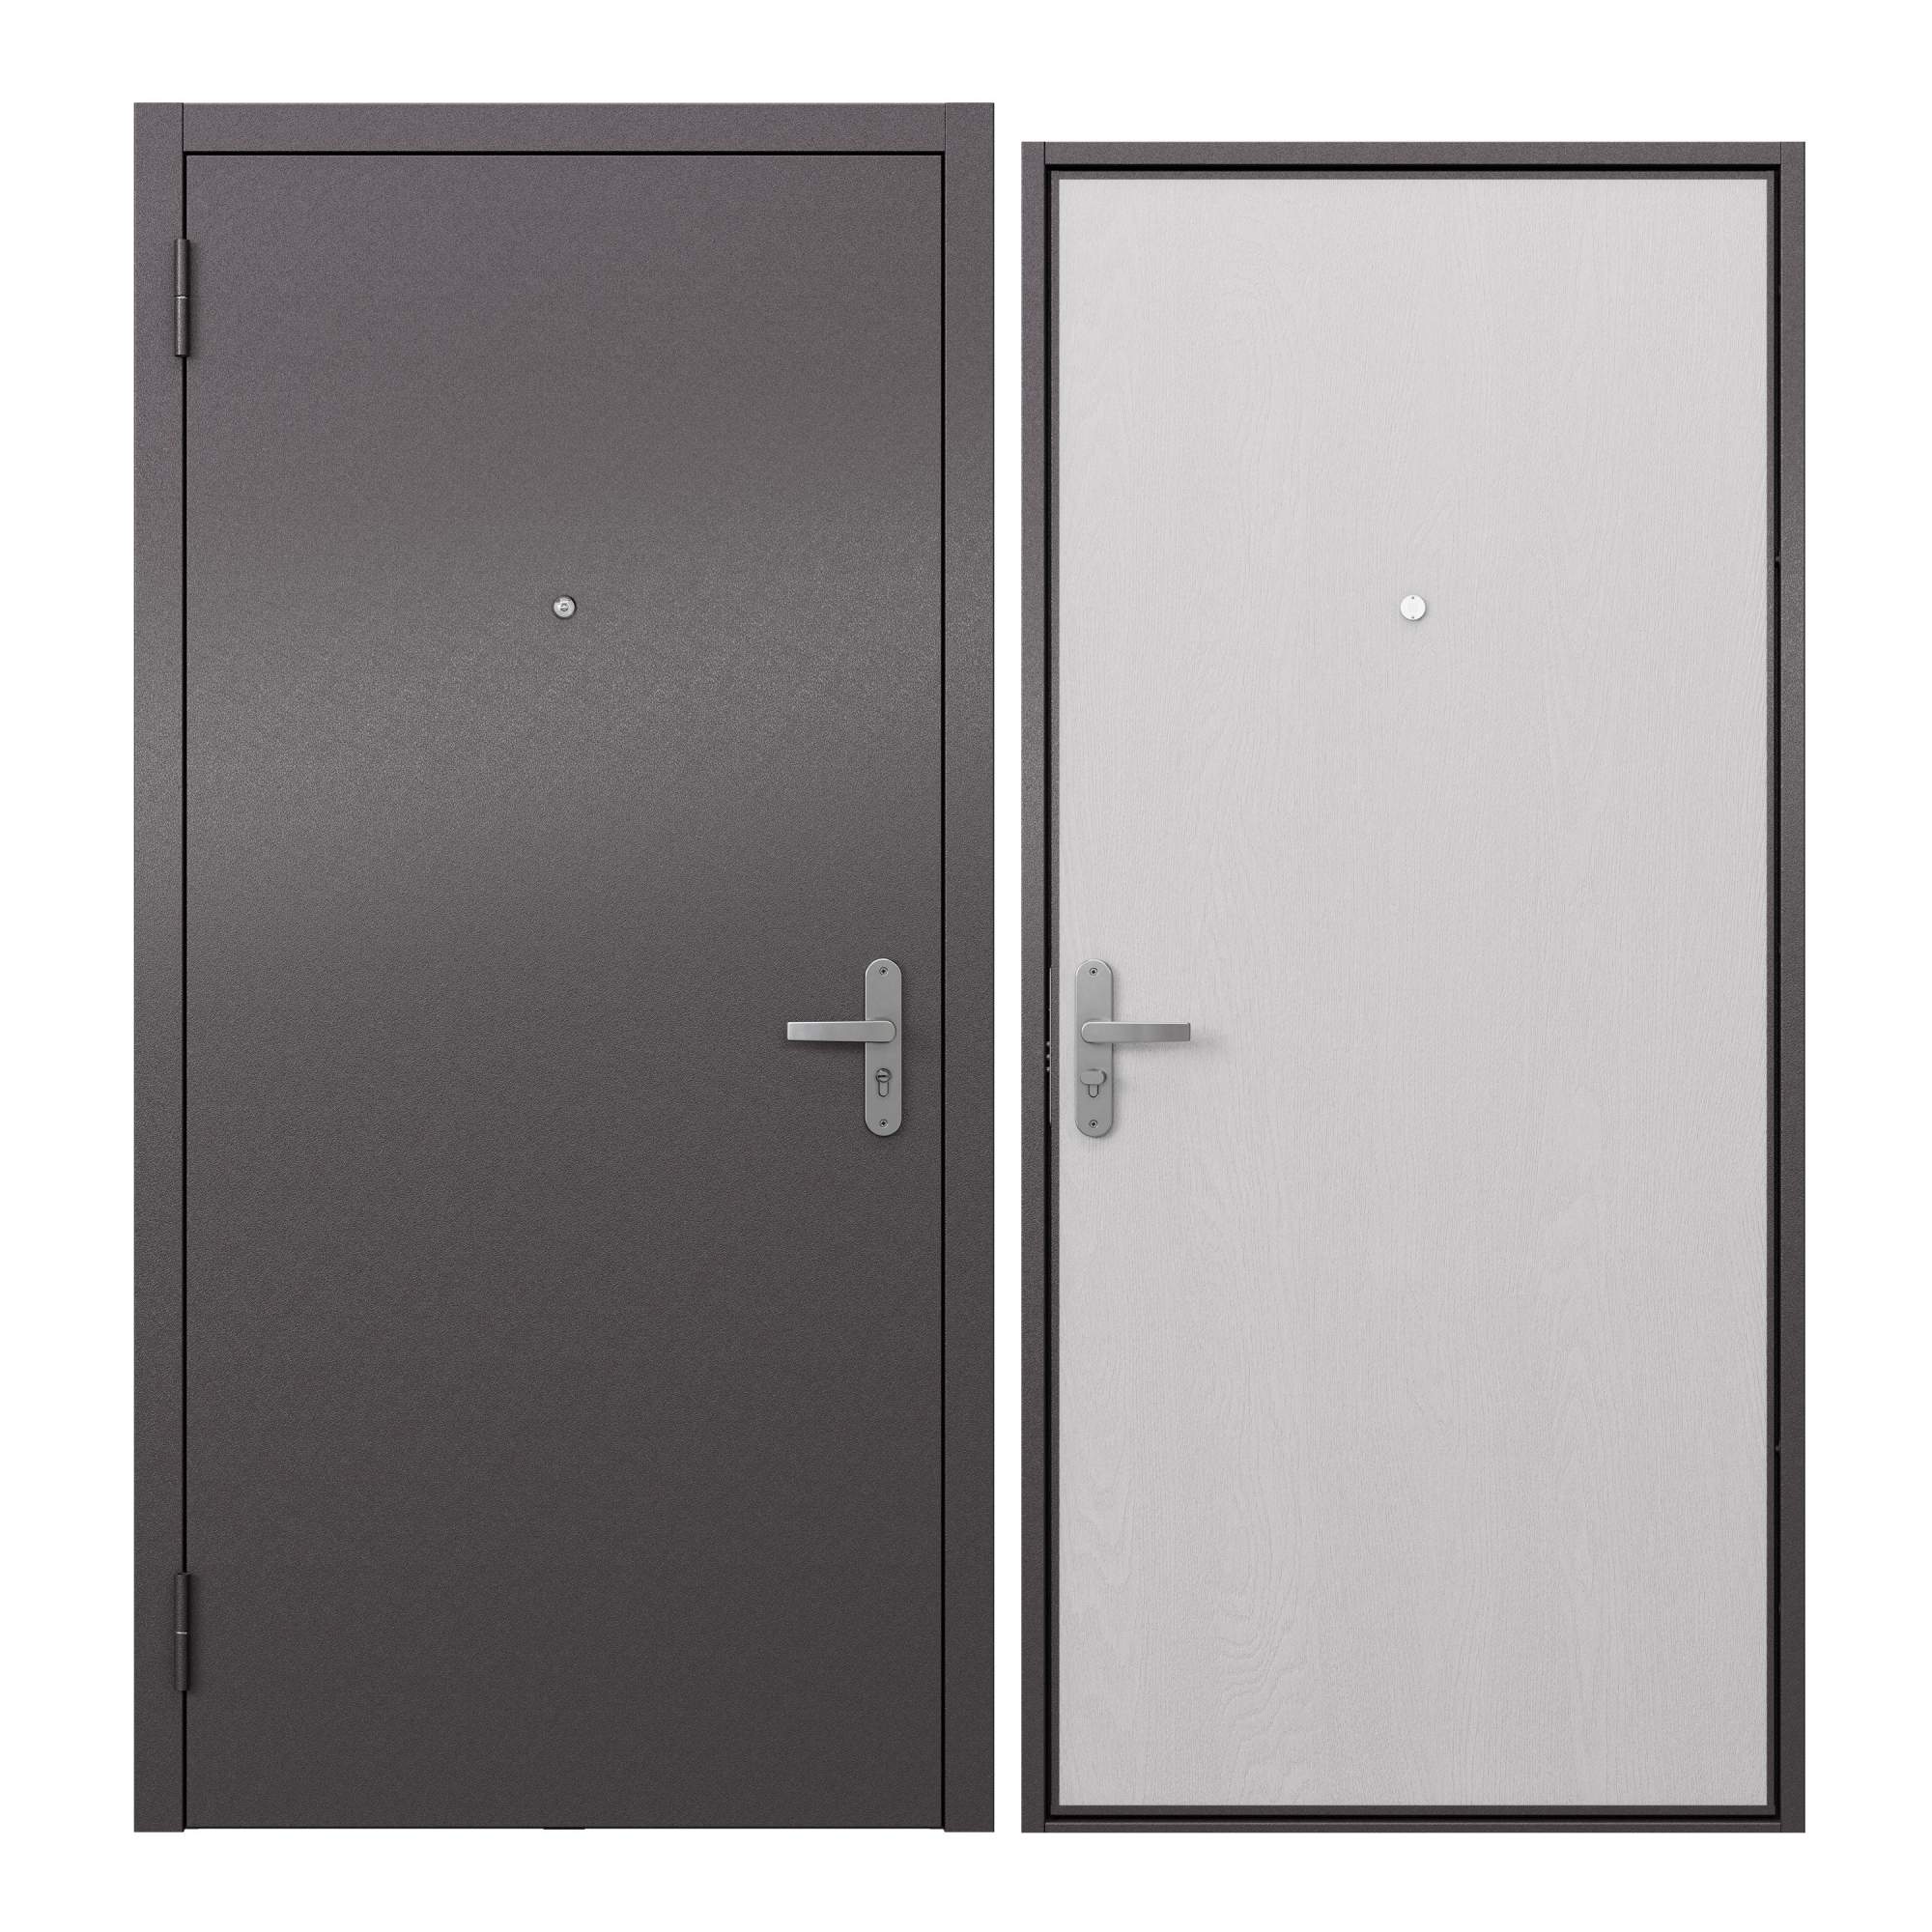 Дверь входная металлическая Proline для квартиры Terminal A 860х2050, левая дверь входная buldoors ютта левая букле шоколад ларче бьянко с зеркалом 860х2050 мм